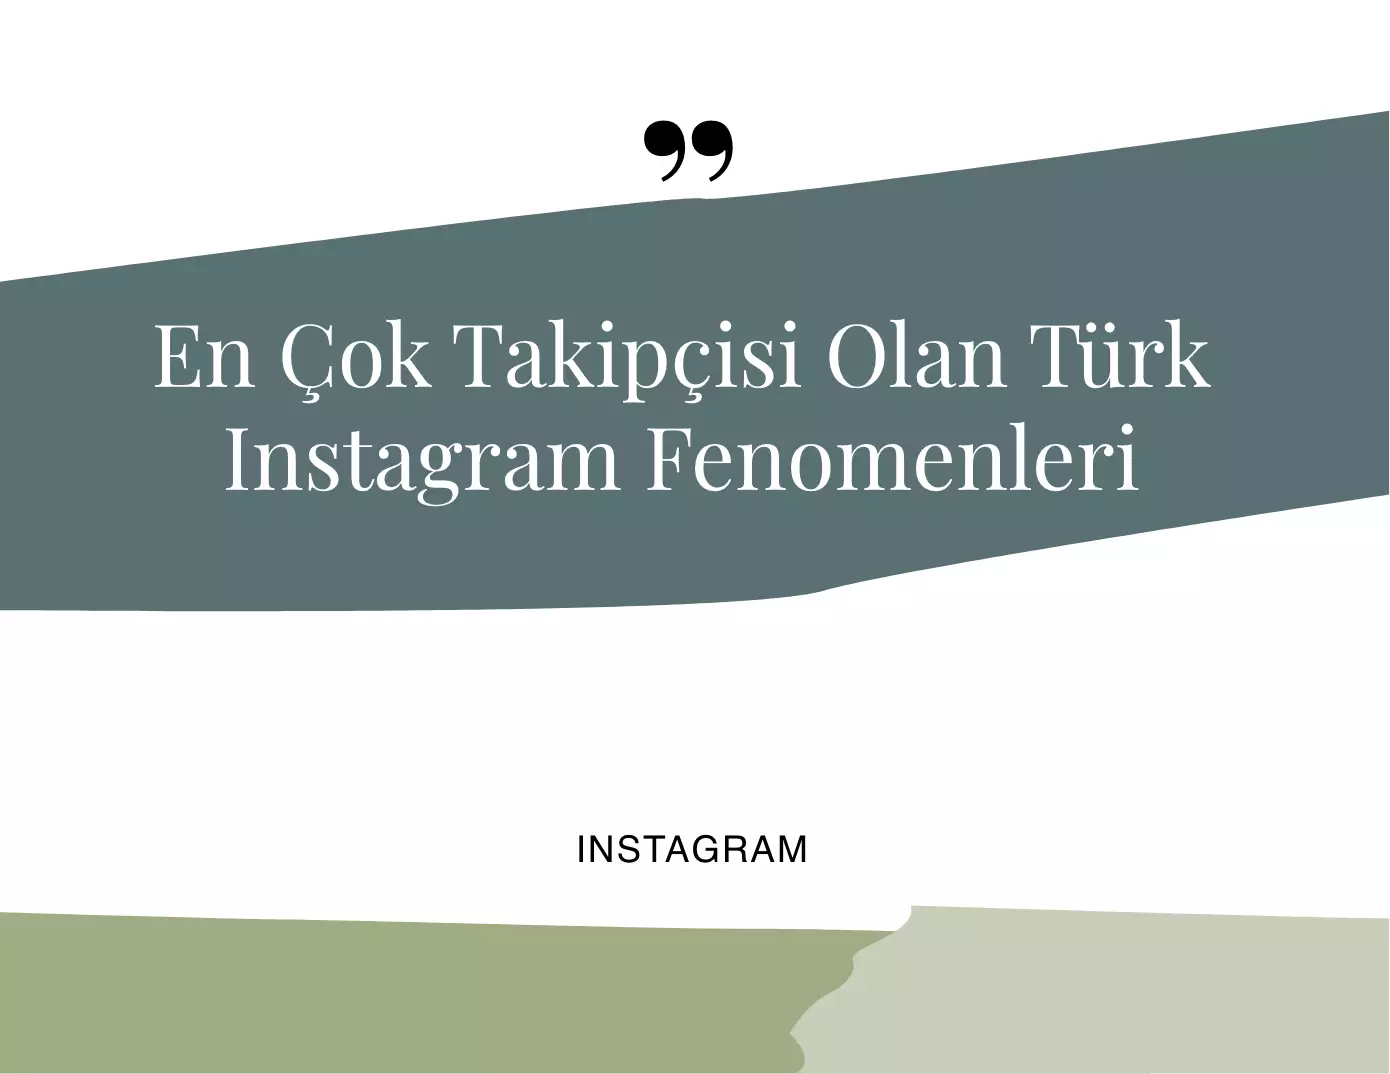 En Çok Takipçisi Olan Türk Instagram Fenomenleri